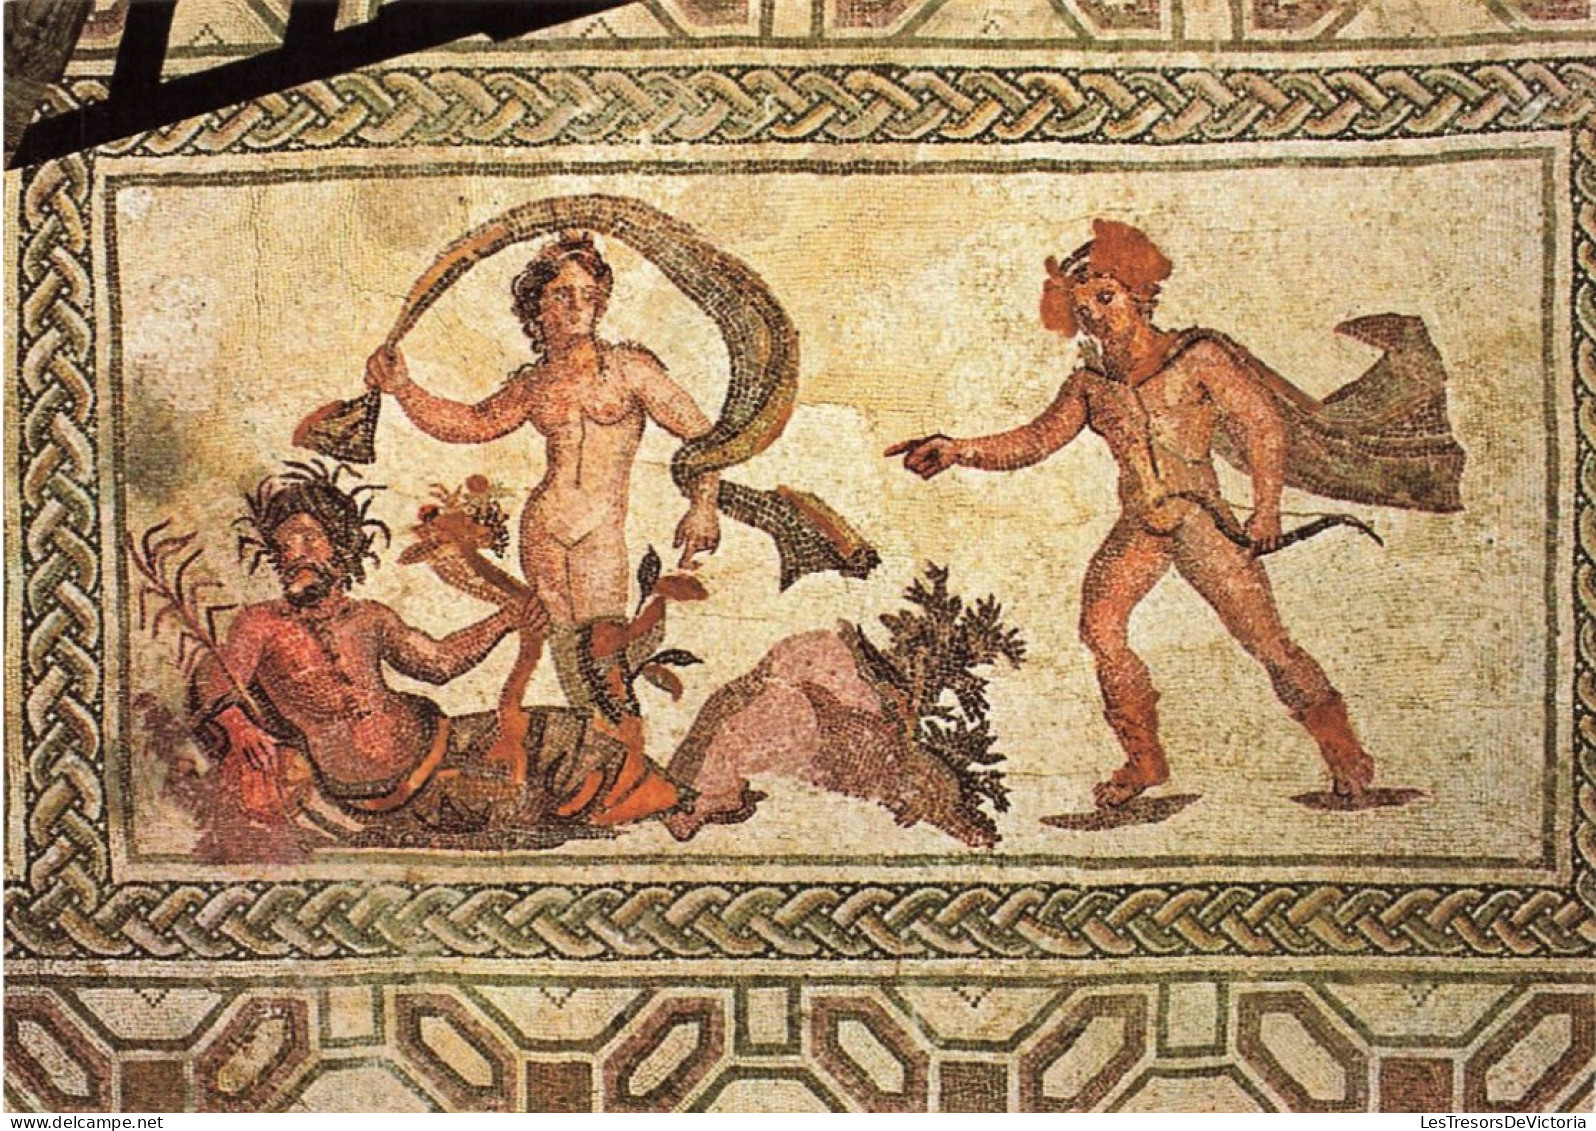 CHYPRE - Apollo Et Daphnè - Mosaïque De La Maison De Dionysos à Paphos - 3e Siècle Ap. J.C - Colorisé - Carte Postale - Cyprus